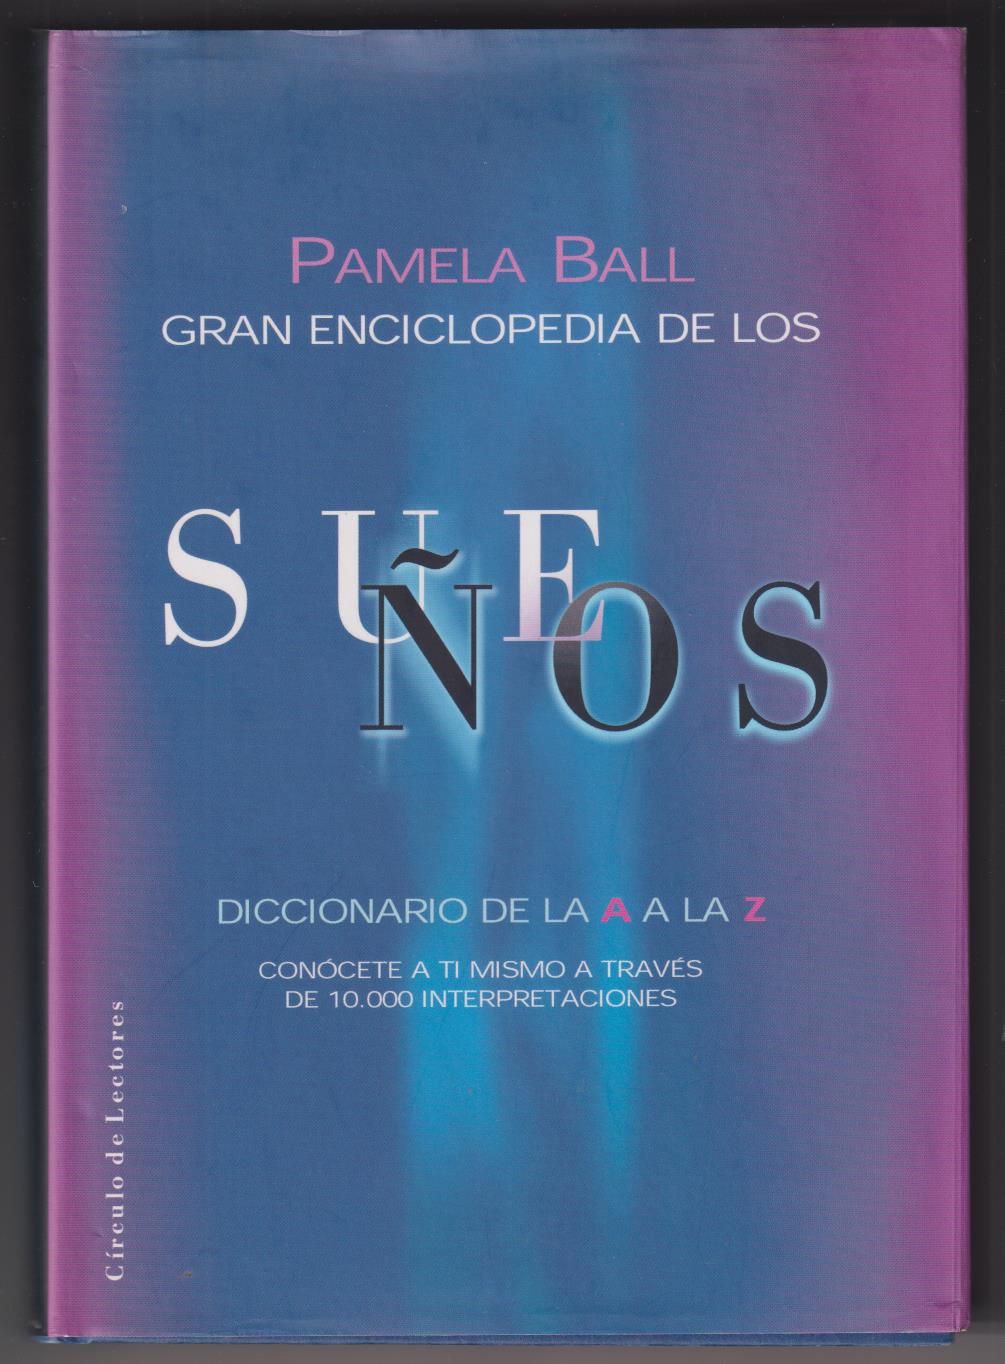 Pamela Ball. Gran Enciclopedia de los sueños. Círculo de Lectores 2002